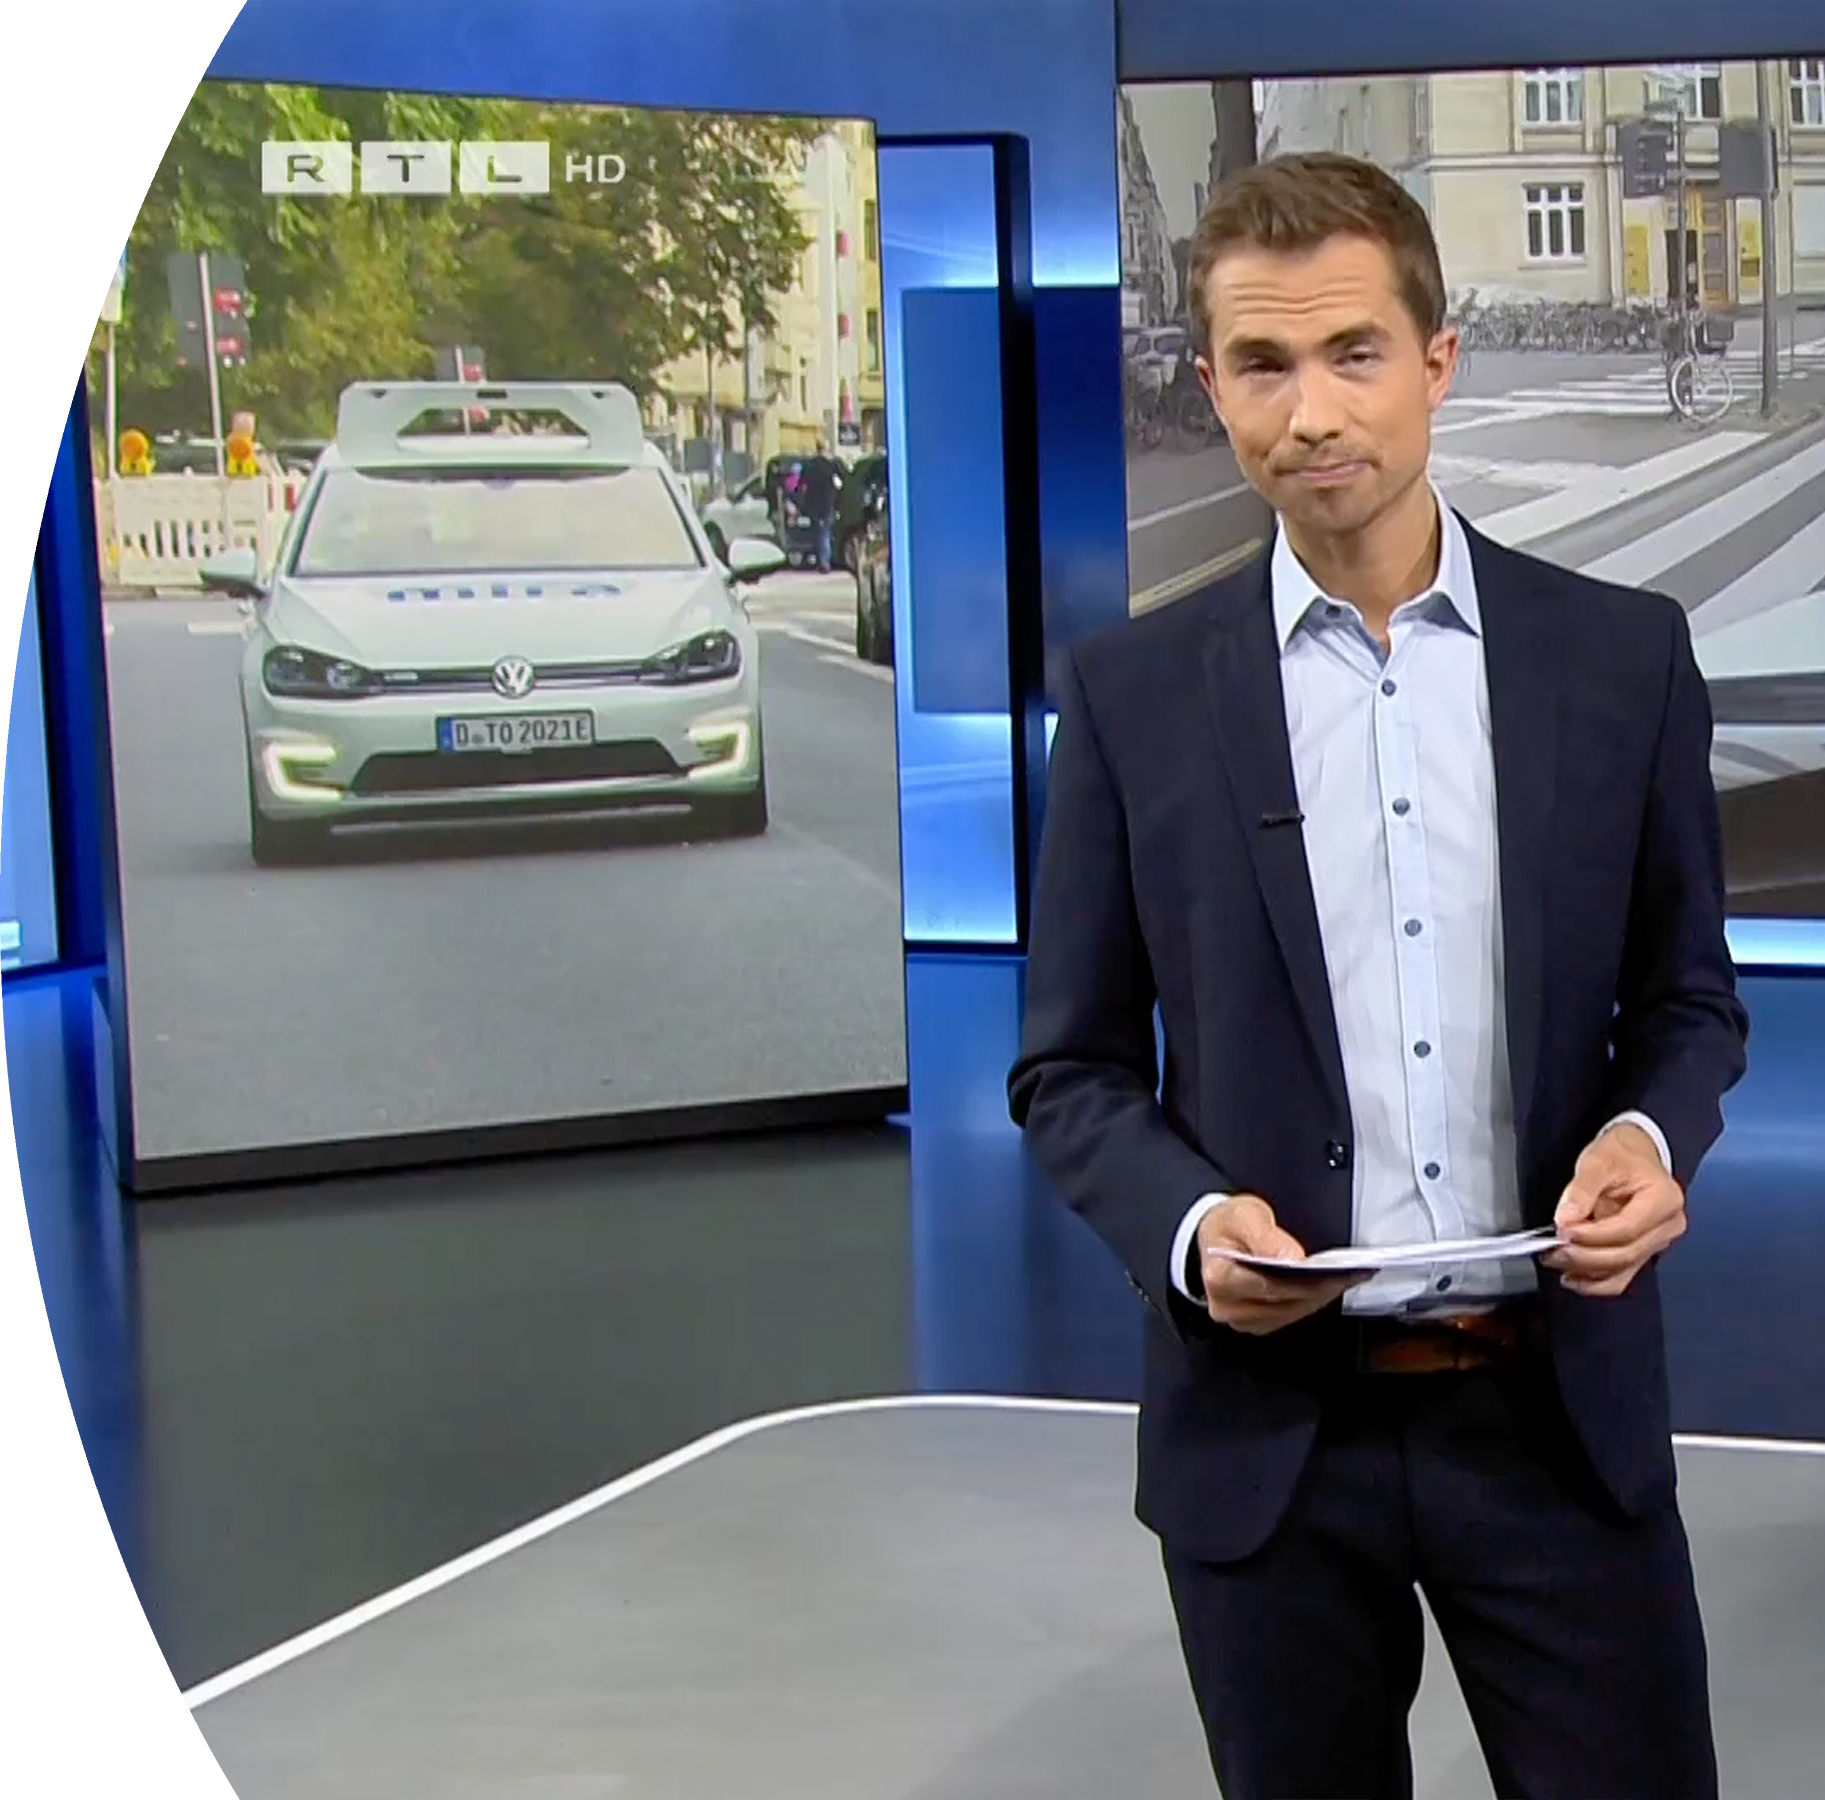 MIRA in den TV-Nachrichten – Zum ersten Mal fährt unser Fahrzeug teleoperiert im innerstädtischen Straßenverkehr